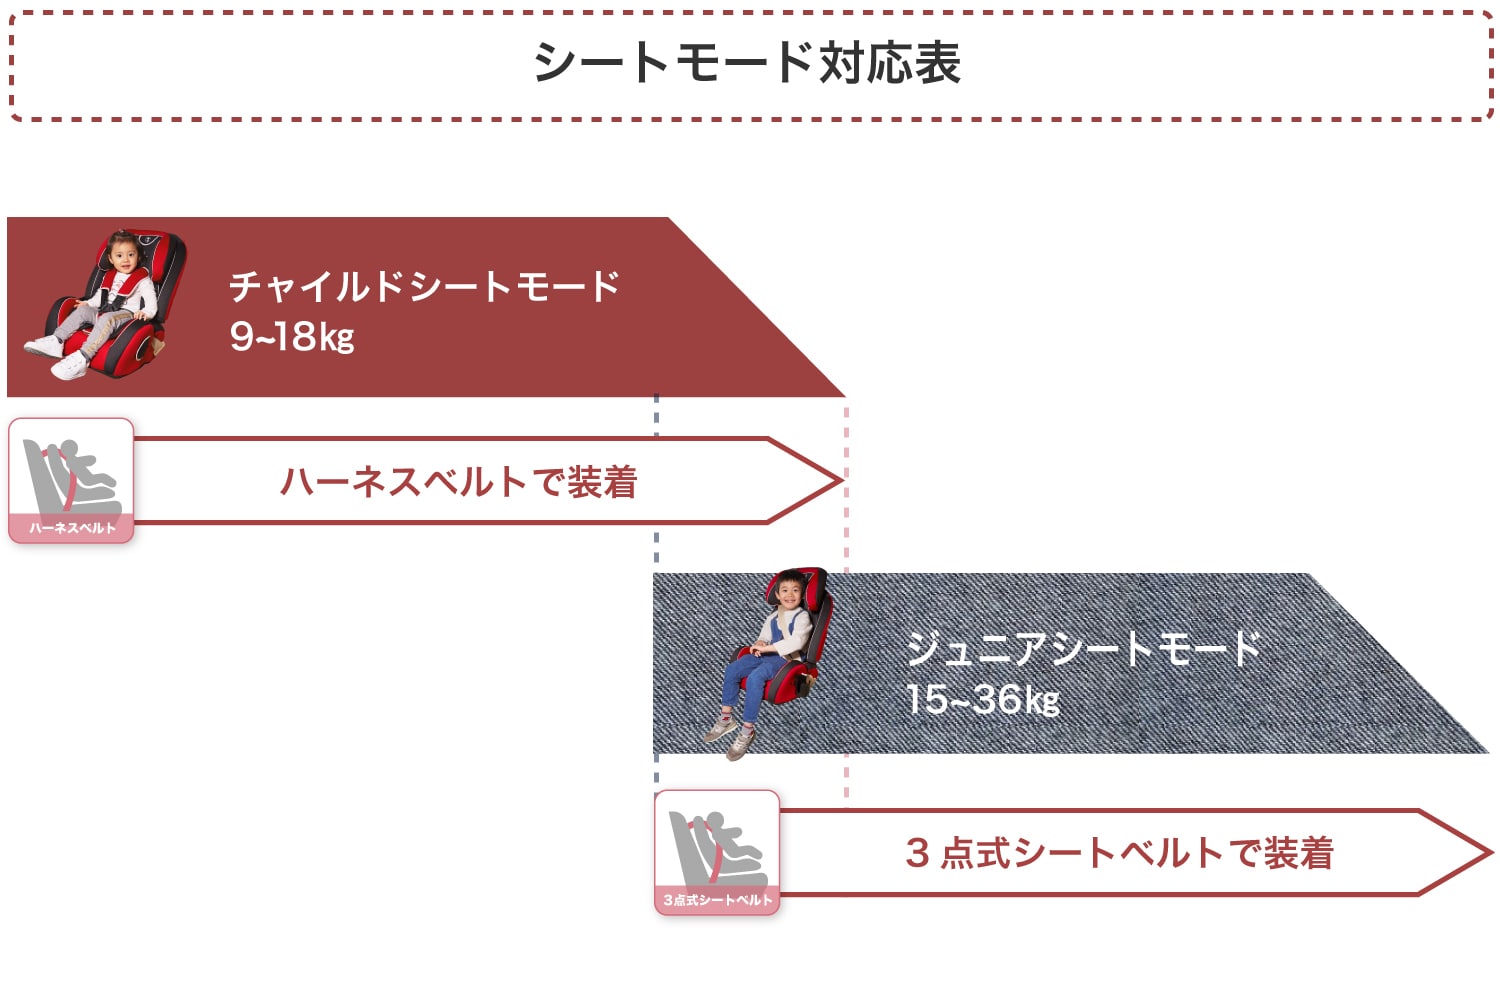 シートモード対応表 ハイバックブースター EC3 日本育児